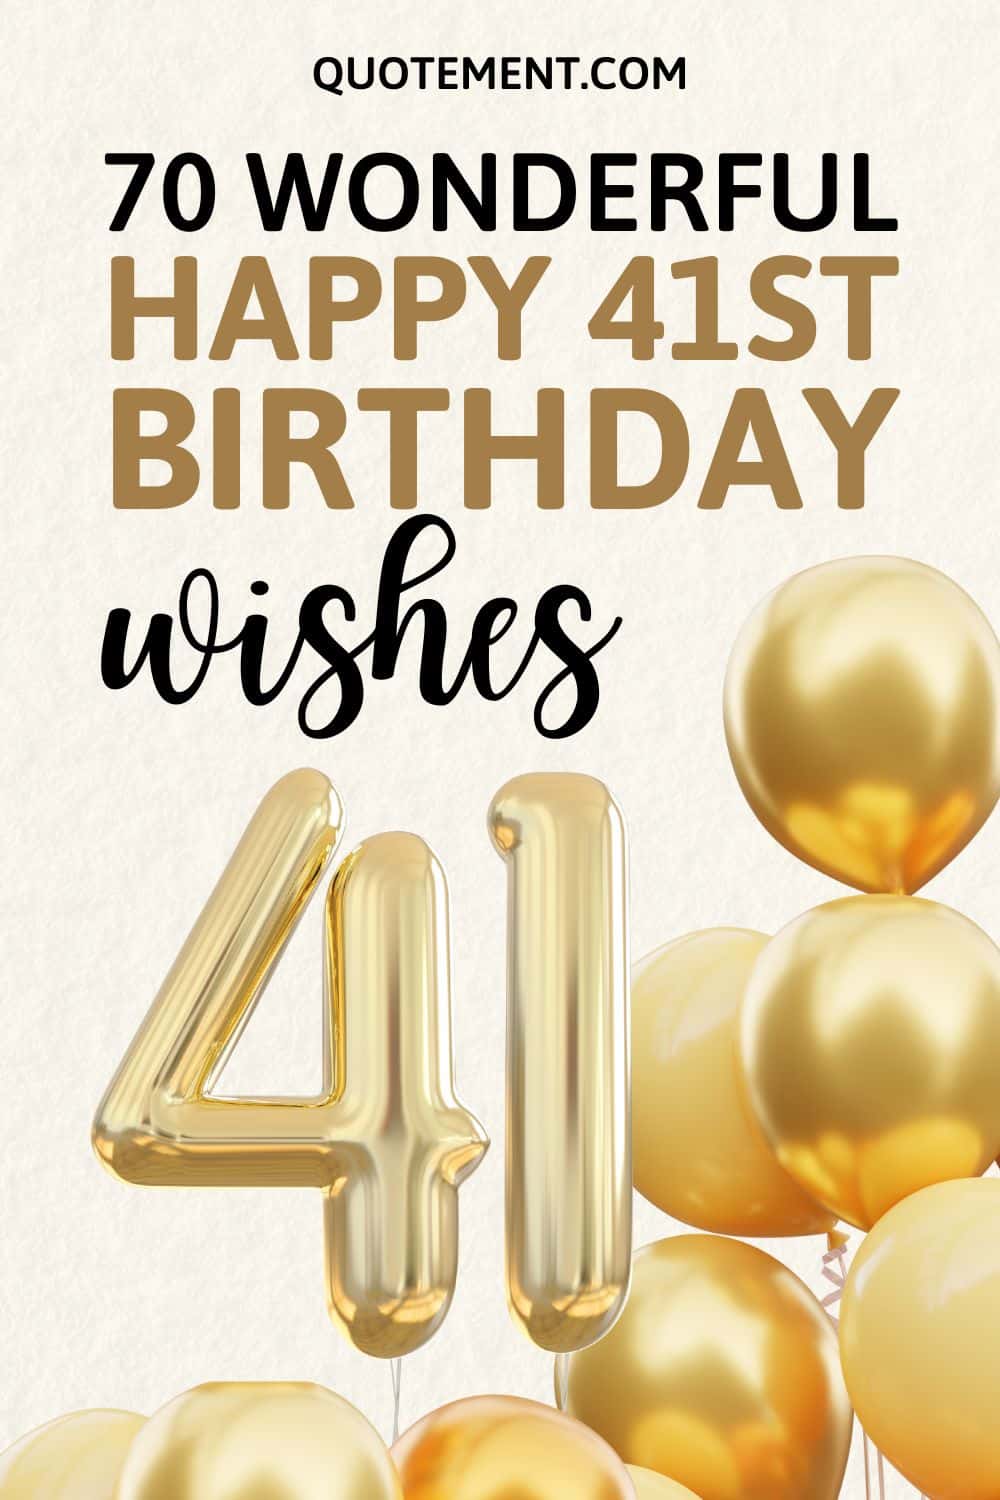 110 Wonderful Ways To Wish Someone A Happy 41st Birthday
